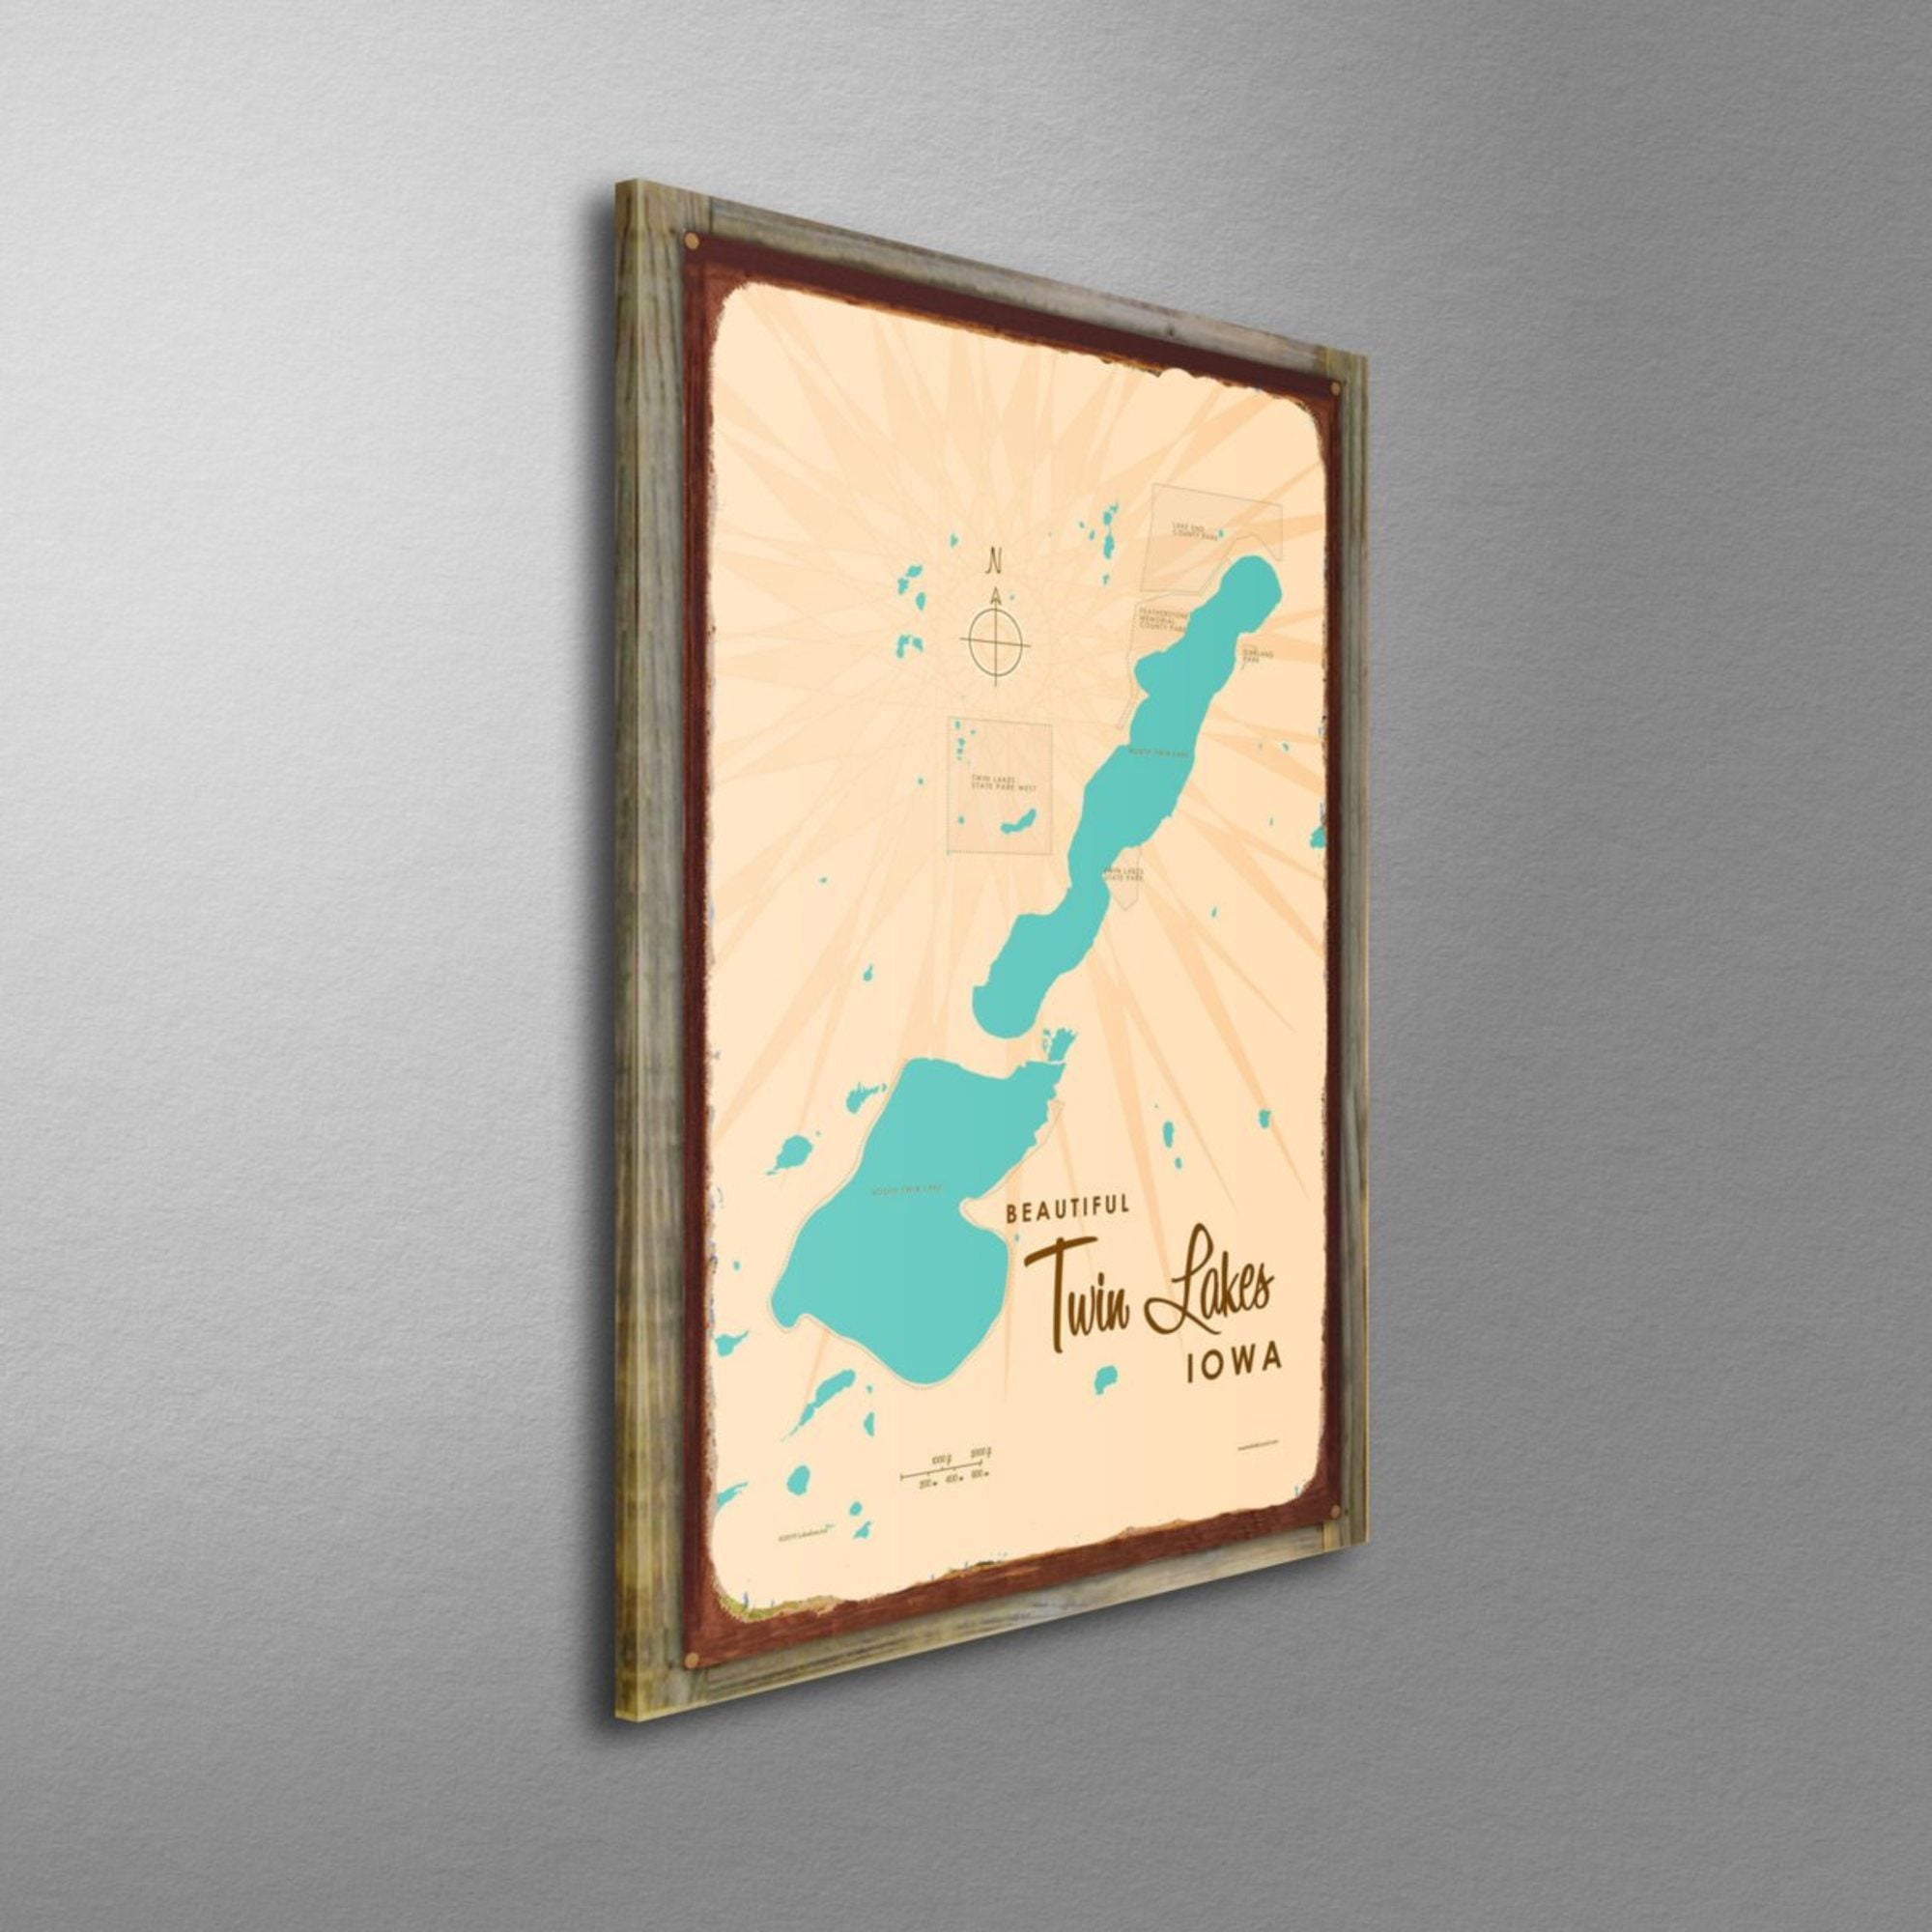 Twin Lakes Iowa, Wood-Mounted Rustic Metal Sign Map Art